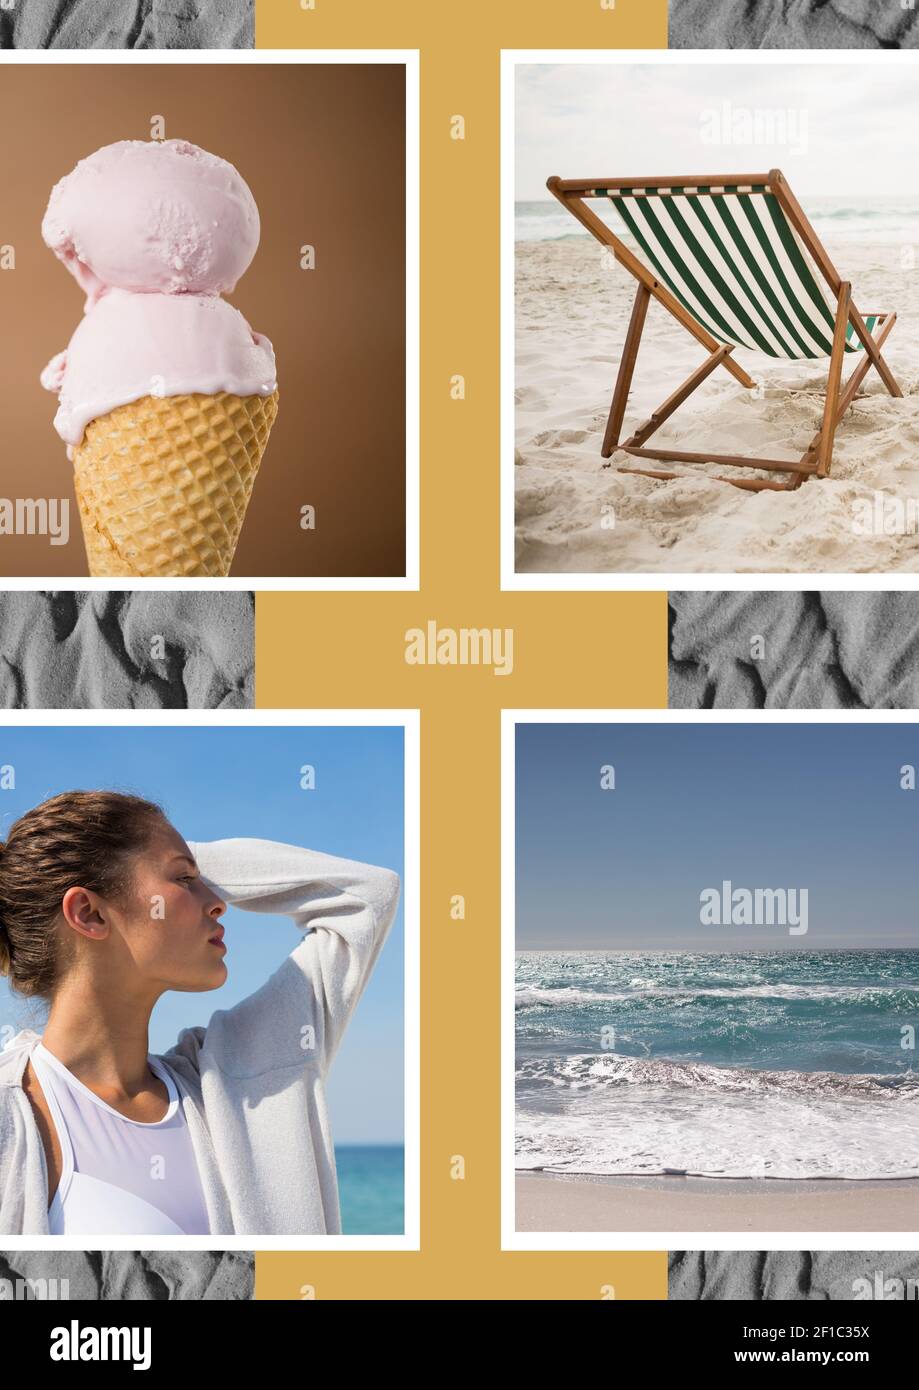 Composición de cuatro imágenes de playa y mar con helado mujer en el perfil y la arena Foto de stock